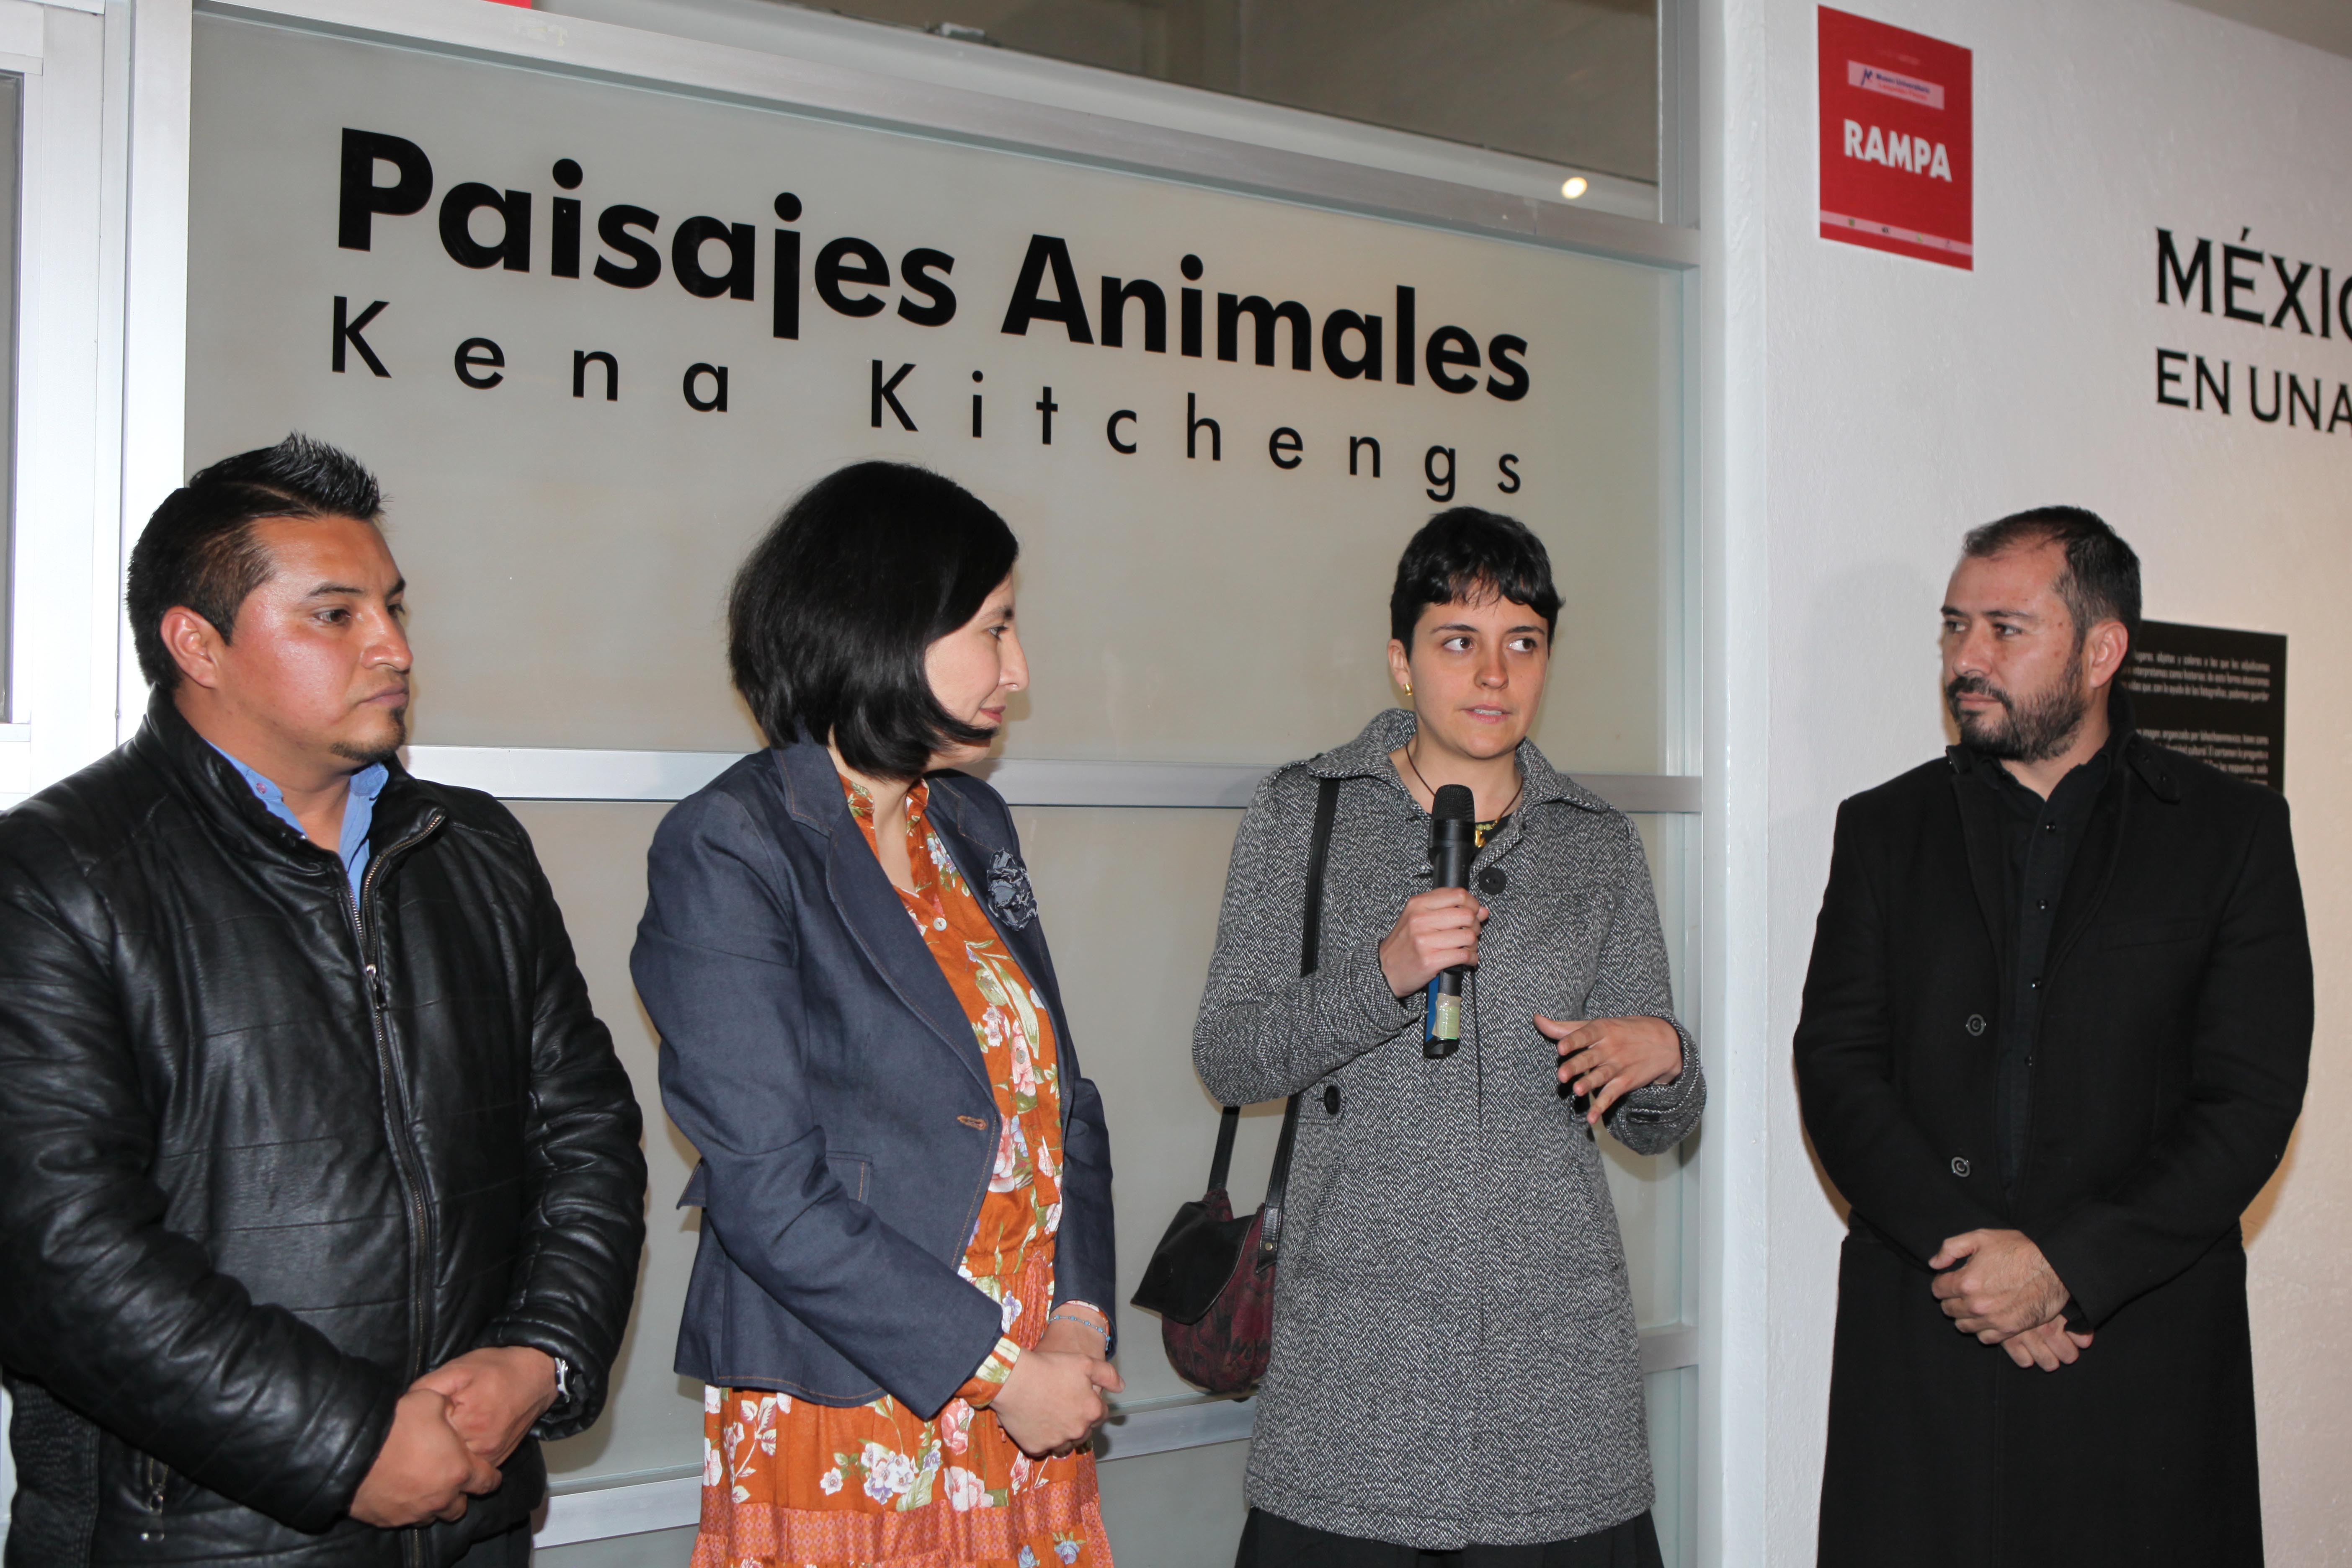 Exposiciones “México en una Imagen” y “Paisajes Animales” en el Museo Universitario de la UAEM